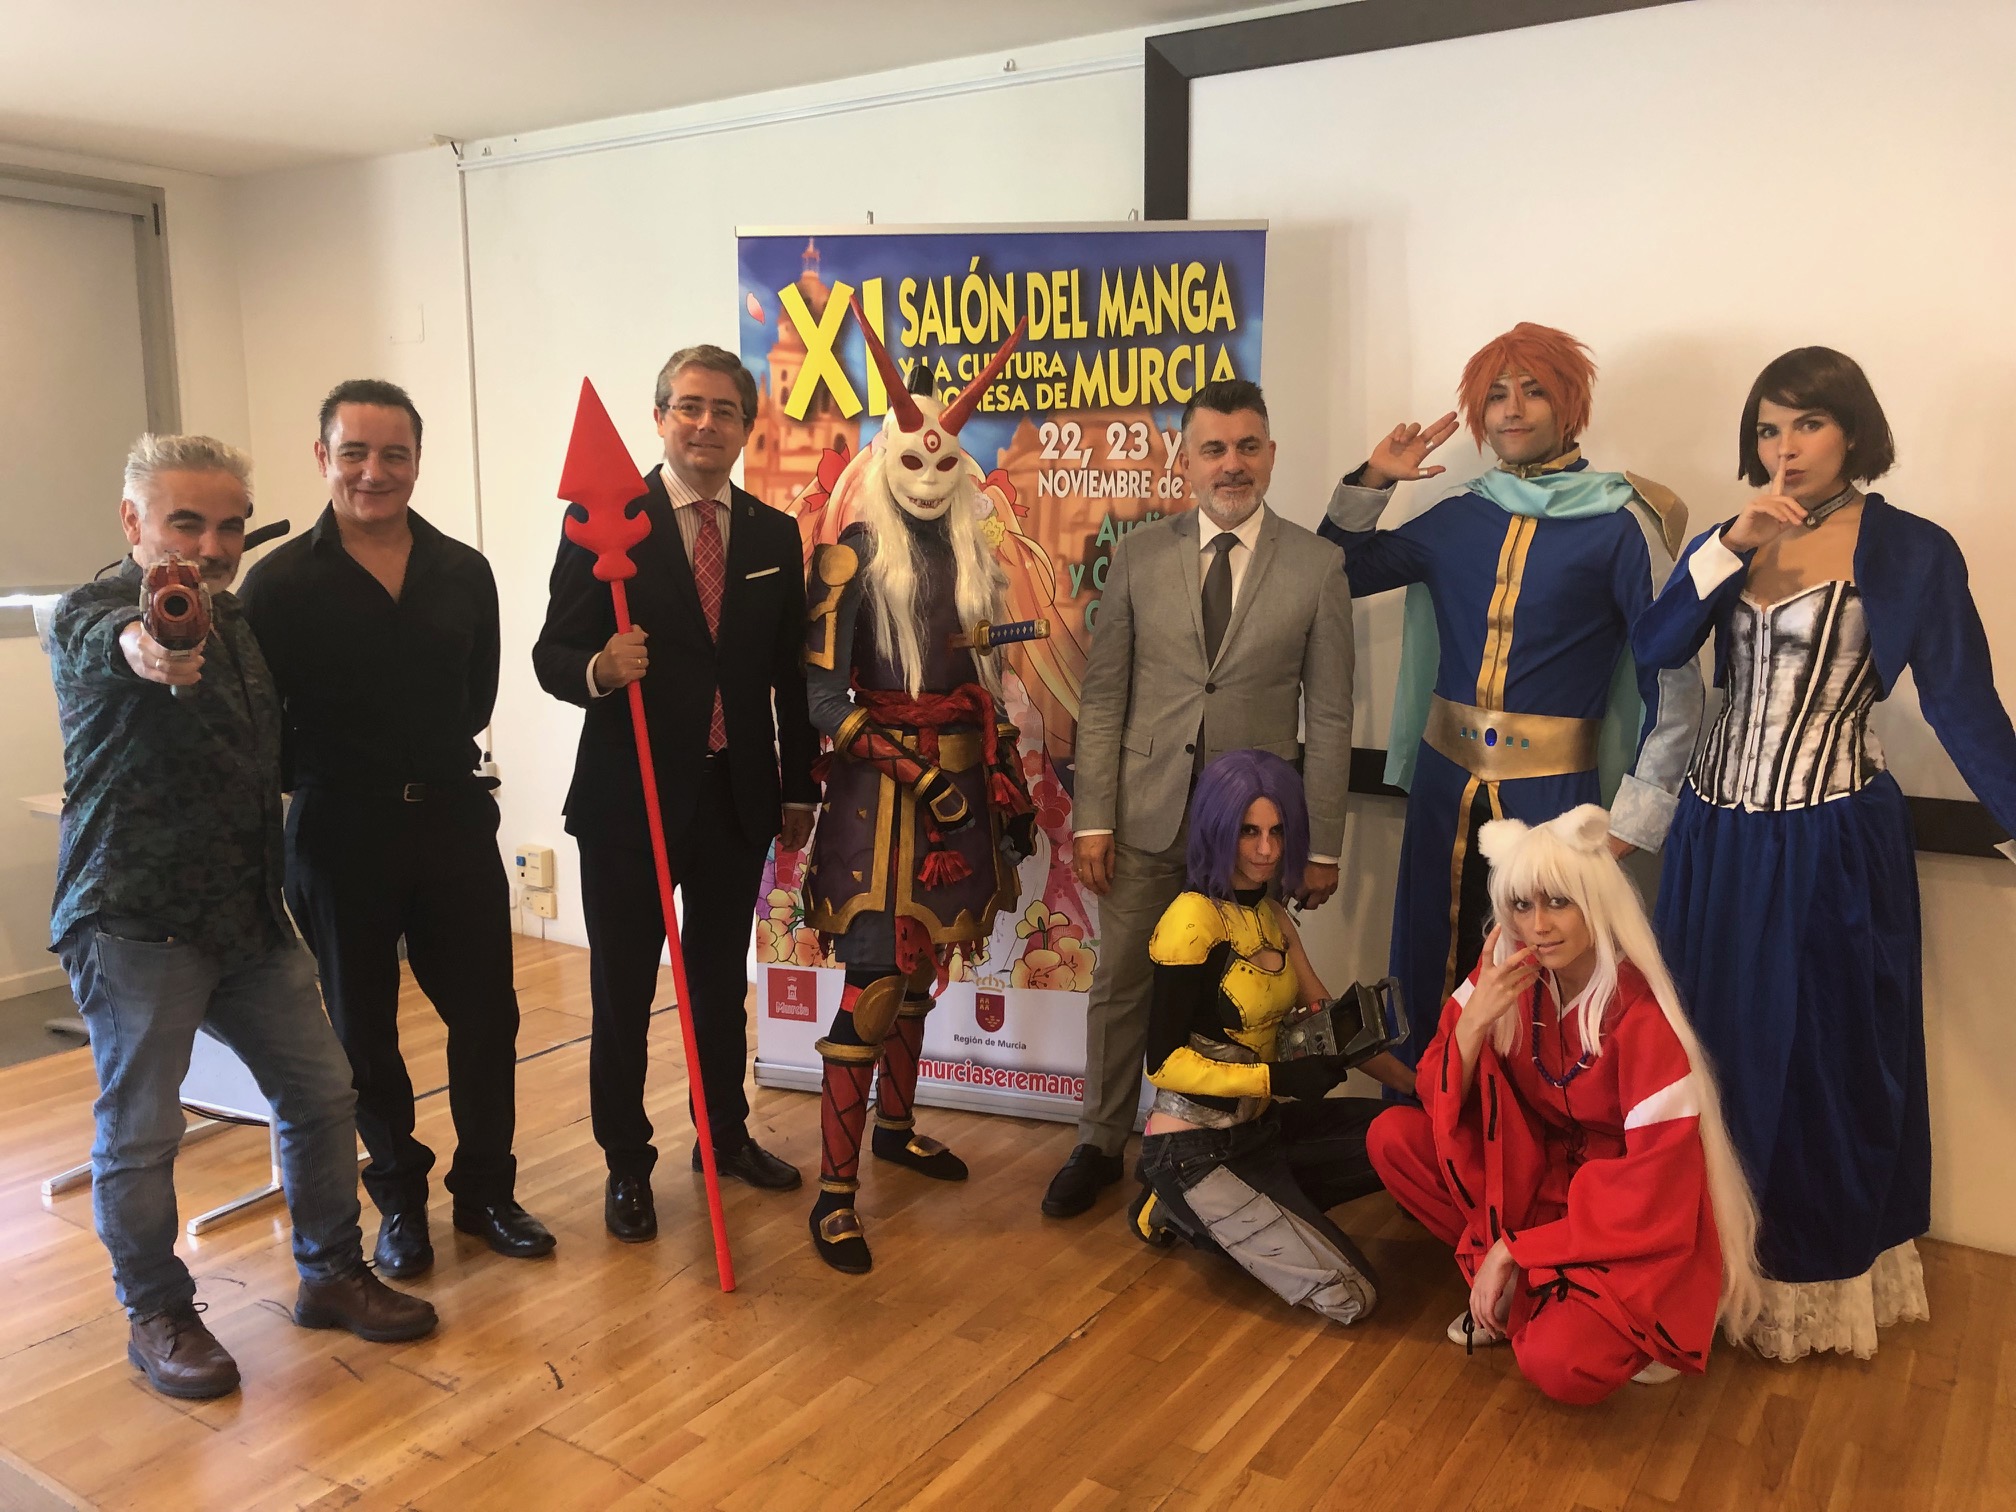 Imagen de la presentación del XI Salón del Manga de Murcia